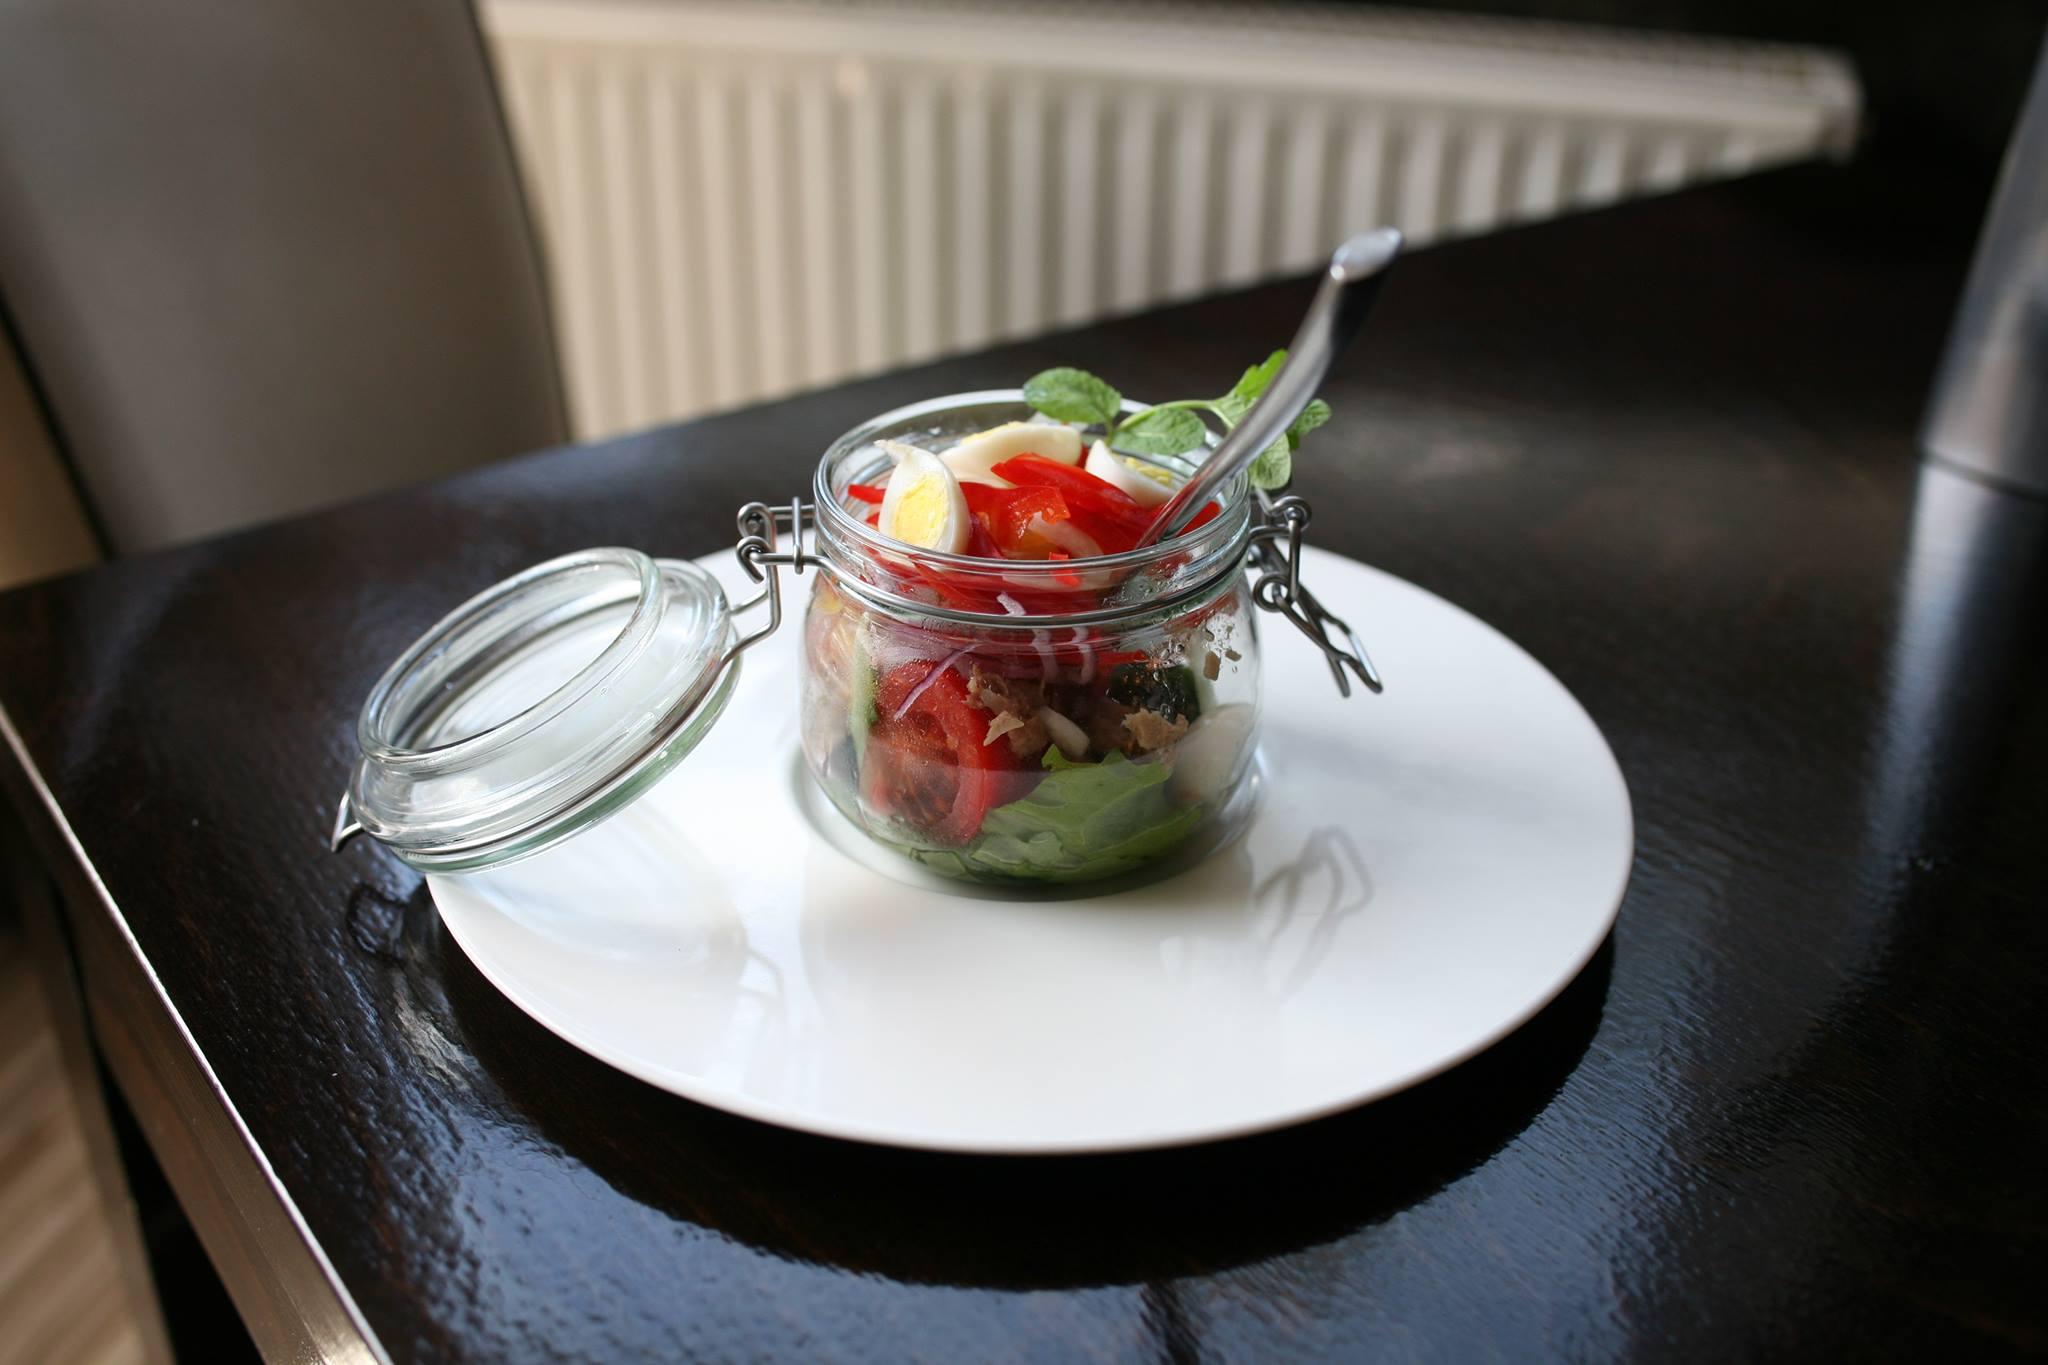 Îți dorești un mod inedit de a servi salata? Chef Florin ne propune cea mai simplă idee!